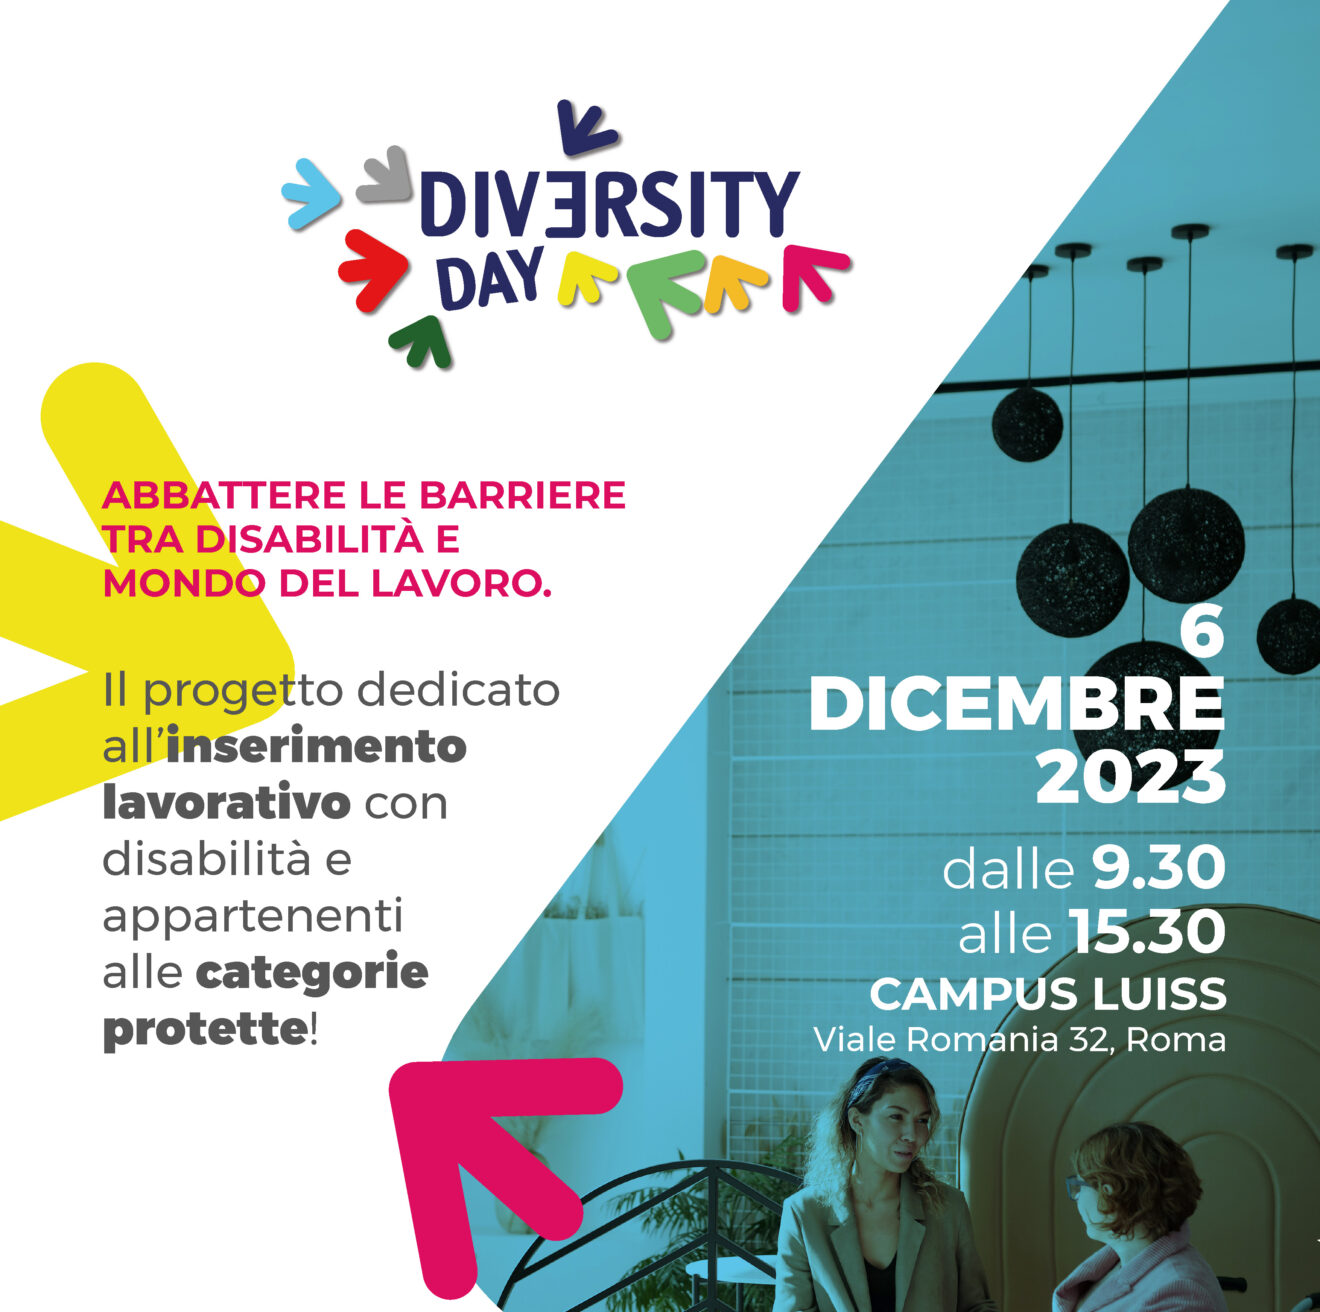 6/12/2023 - Diversity Day presso il Campus LUISS